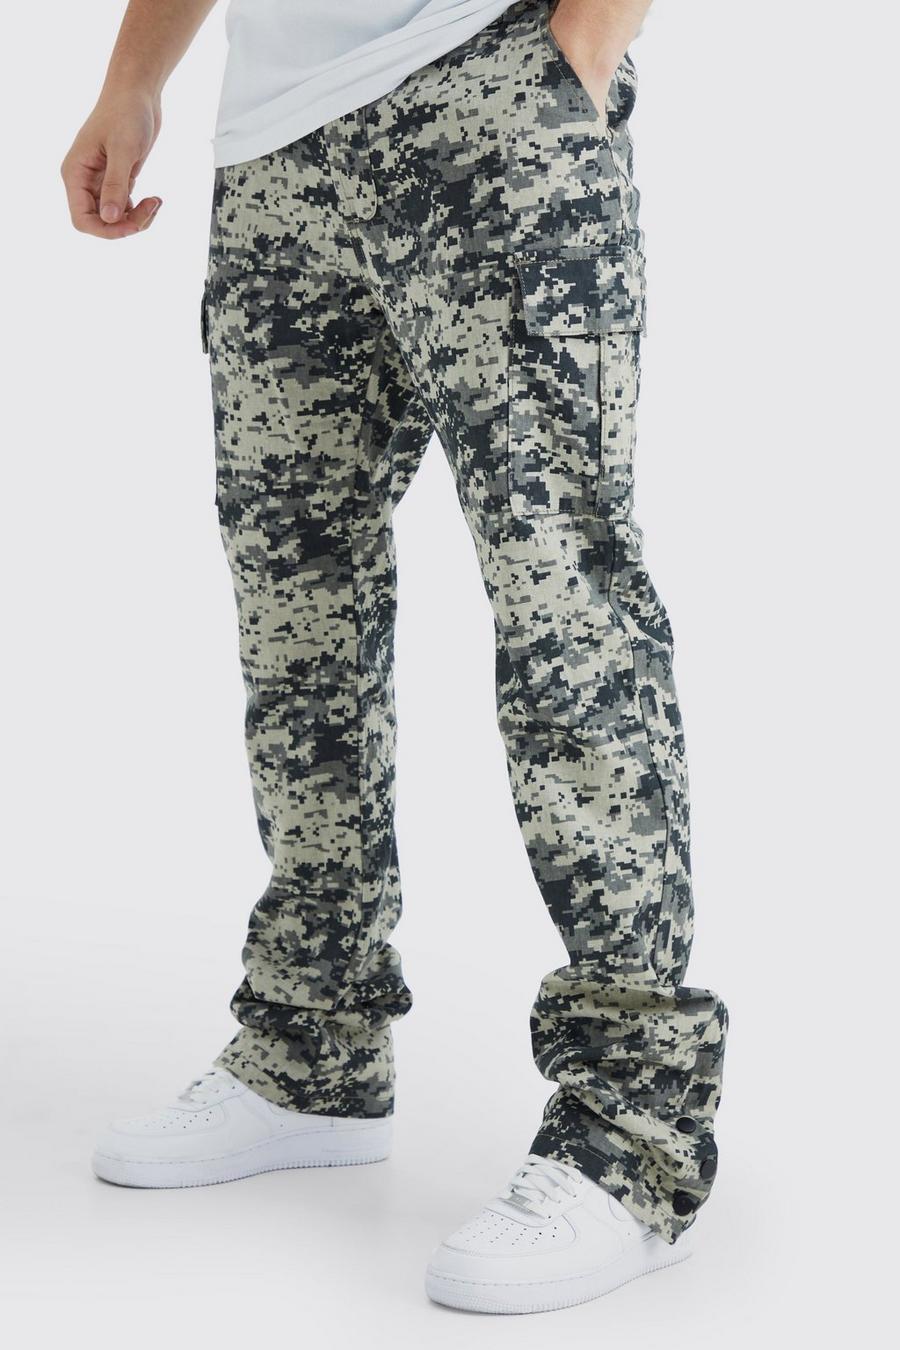 Pantaloni Cargo Tall Slim Fit in fantasia militare con bottoni a pressione sul fondo, Charcoal